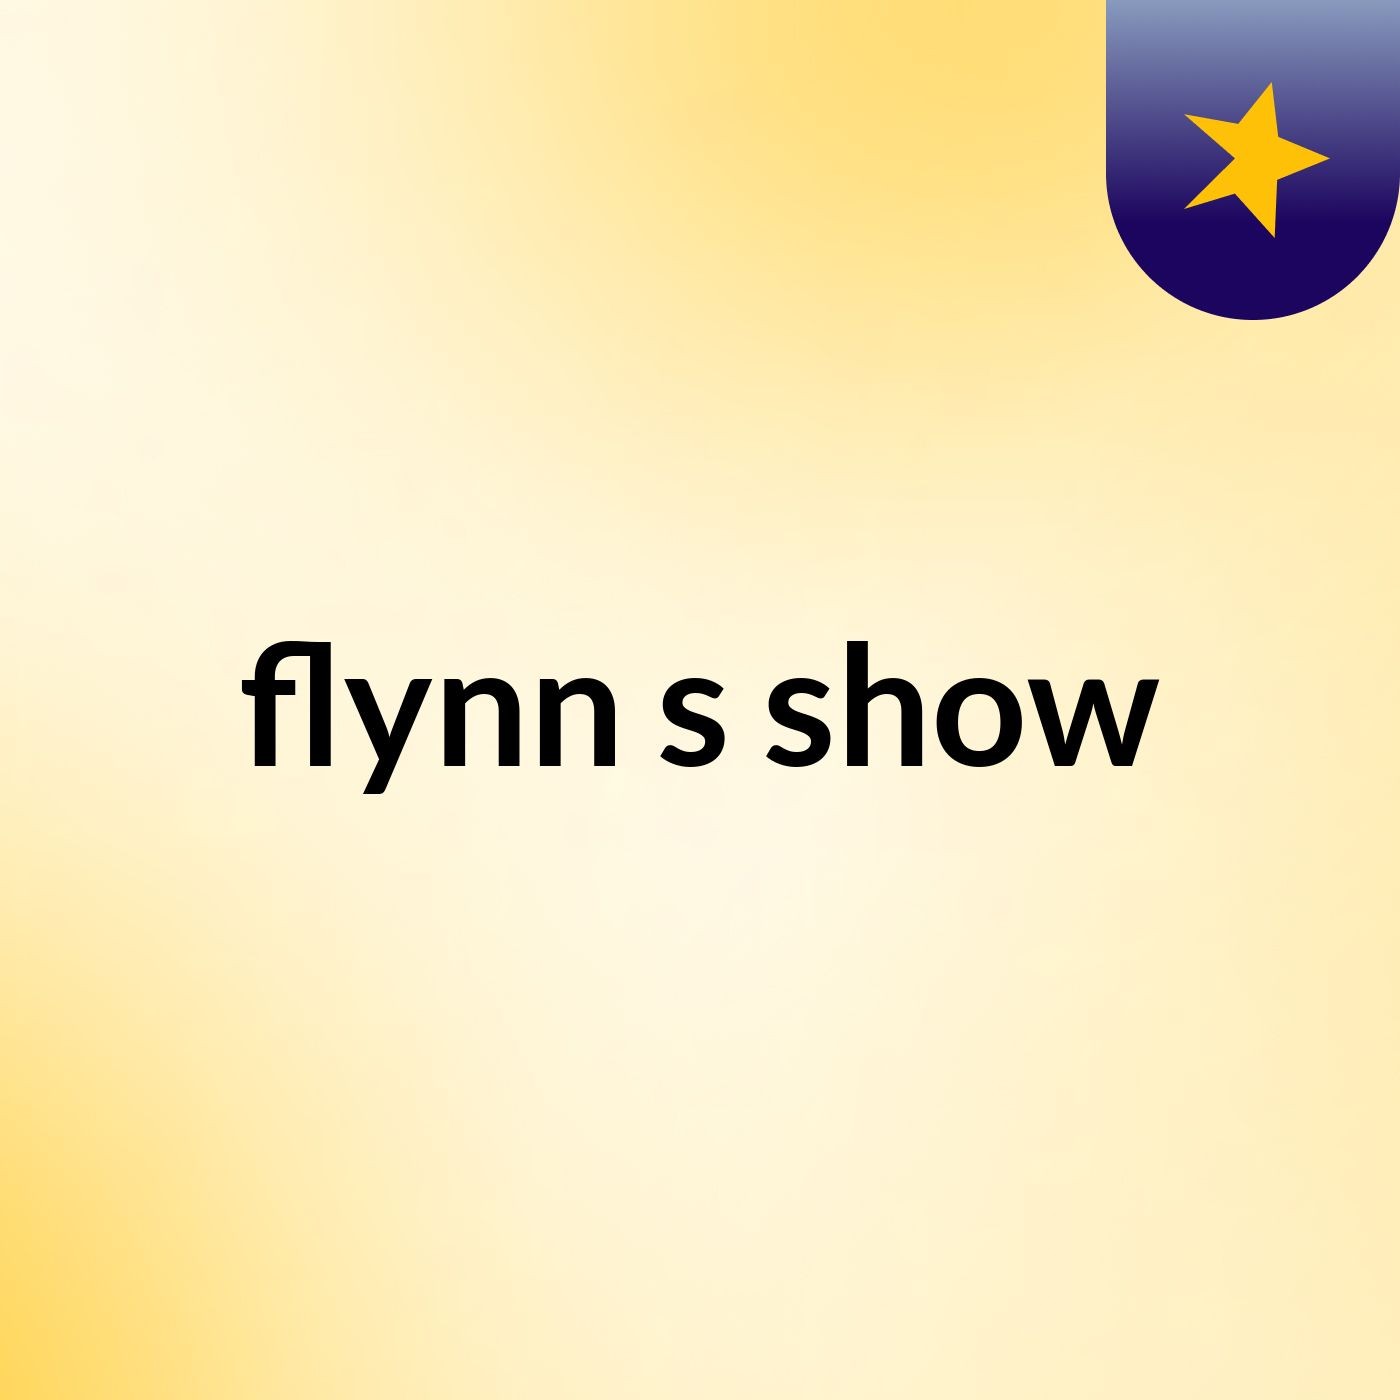 flynn's show